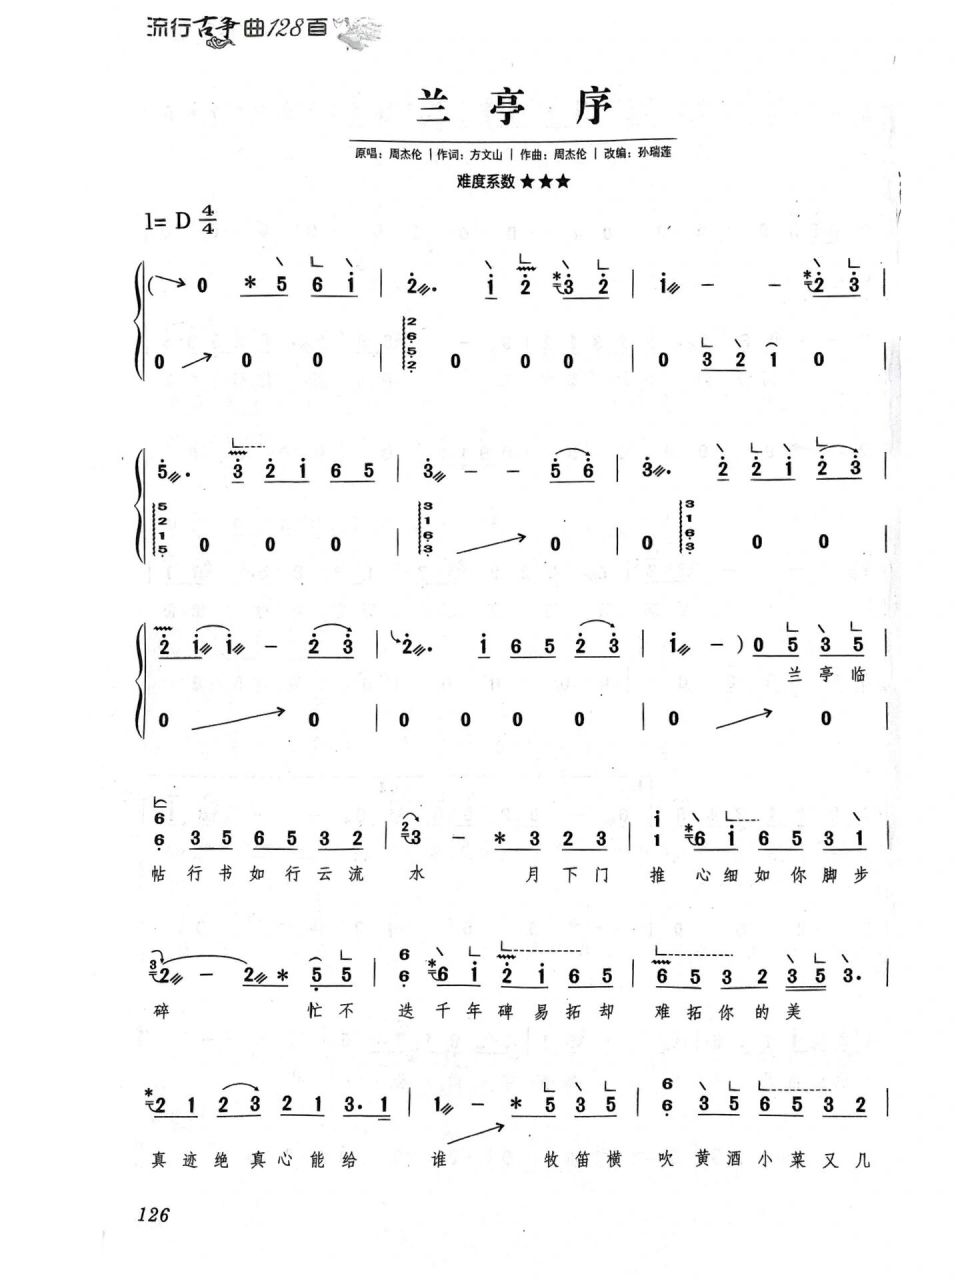 兰亭序 完整版 古筝曲谱 超好听的古风歌曲 学起来